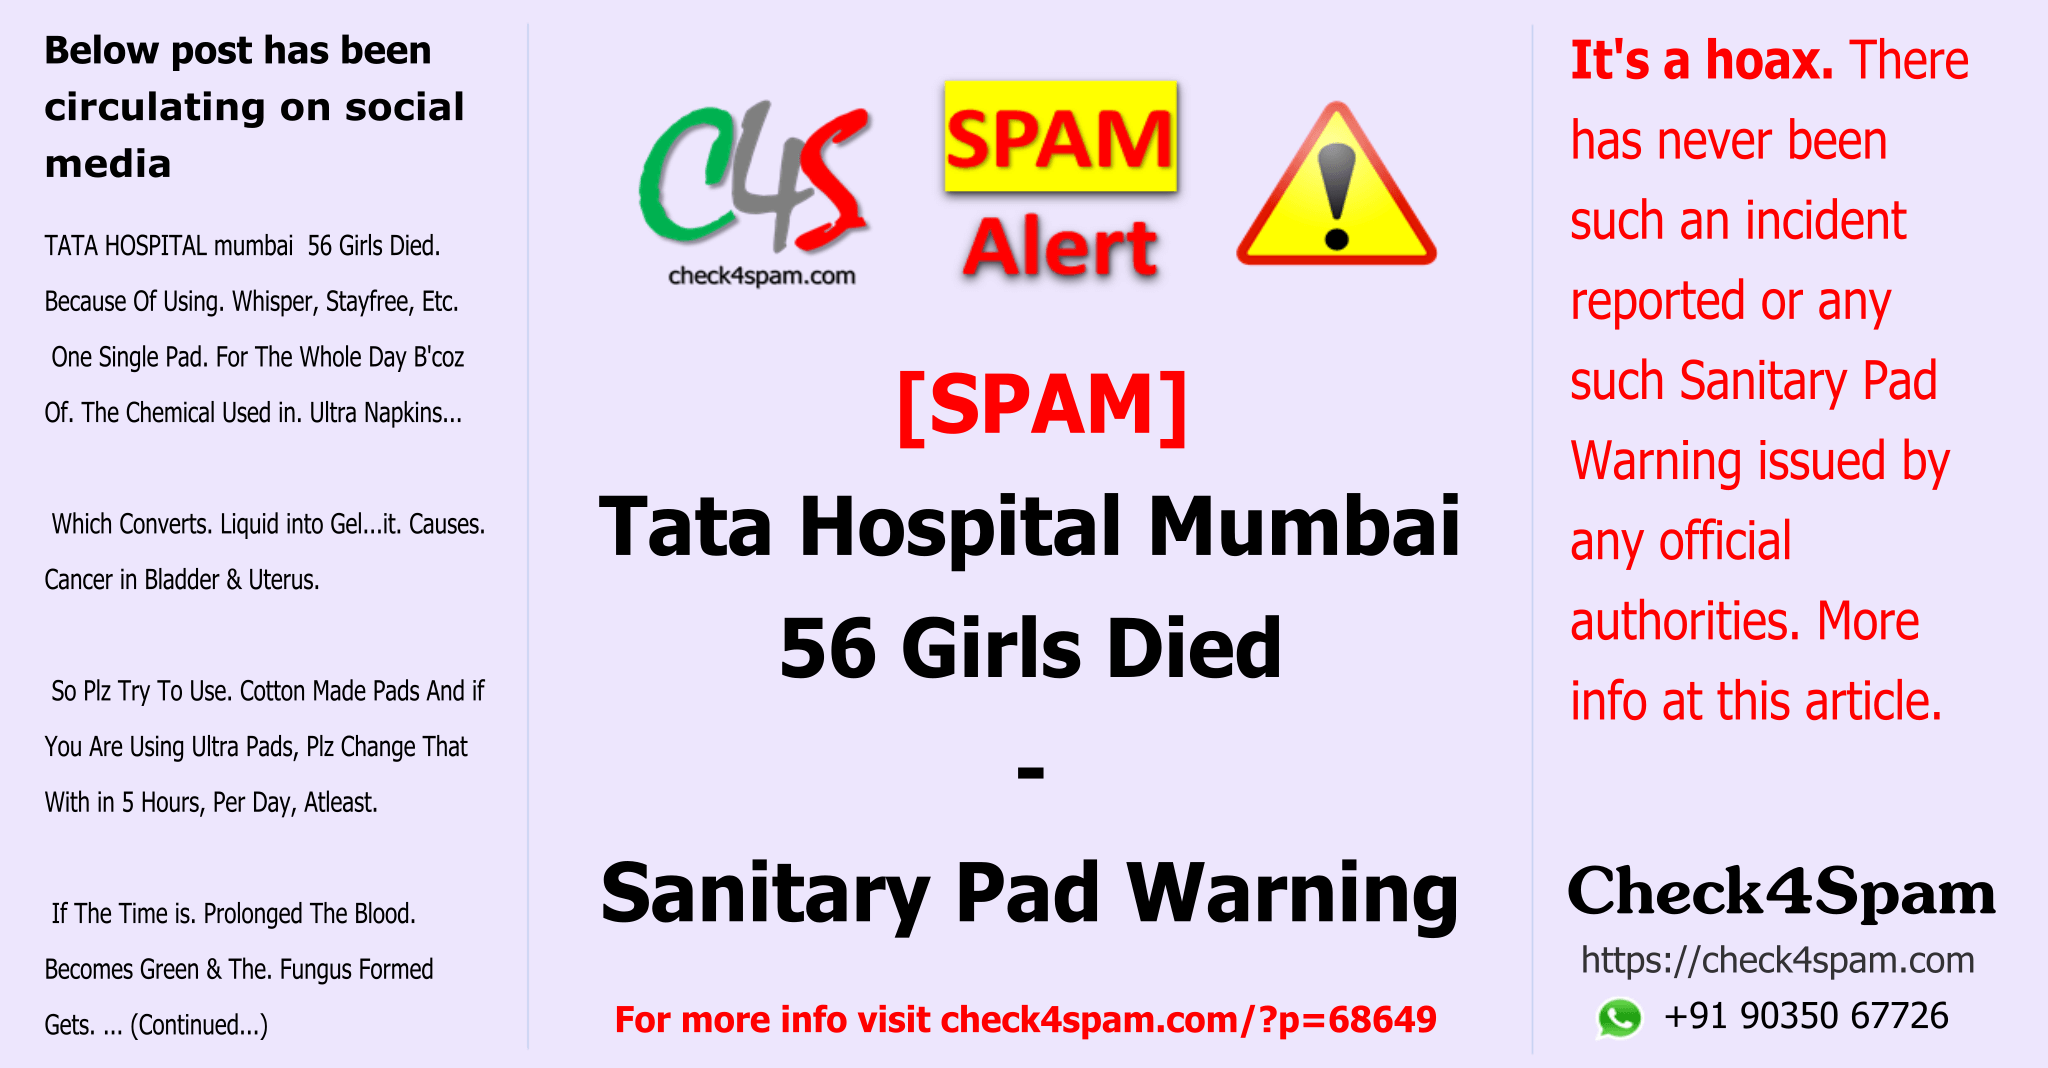 Sanitary Pad Warning - SPAM